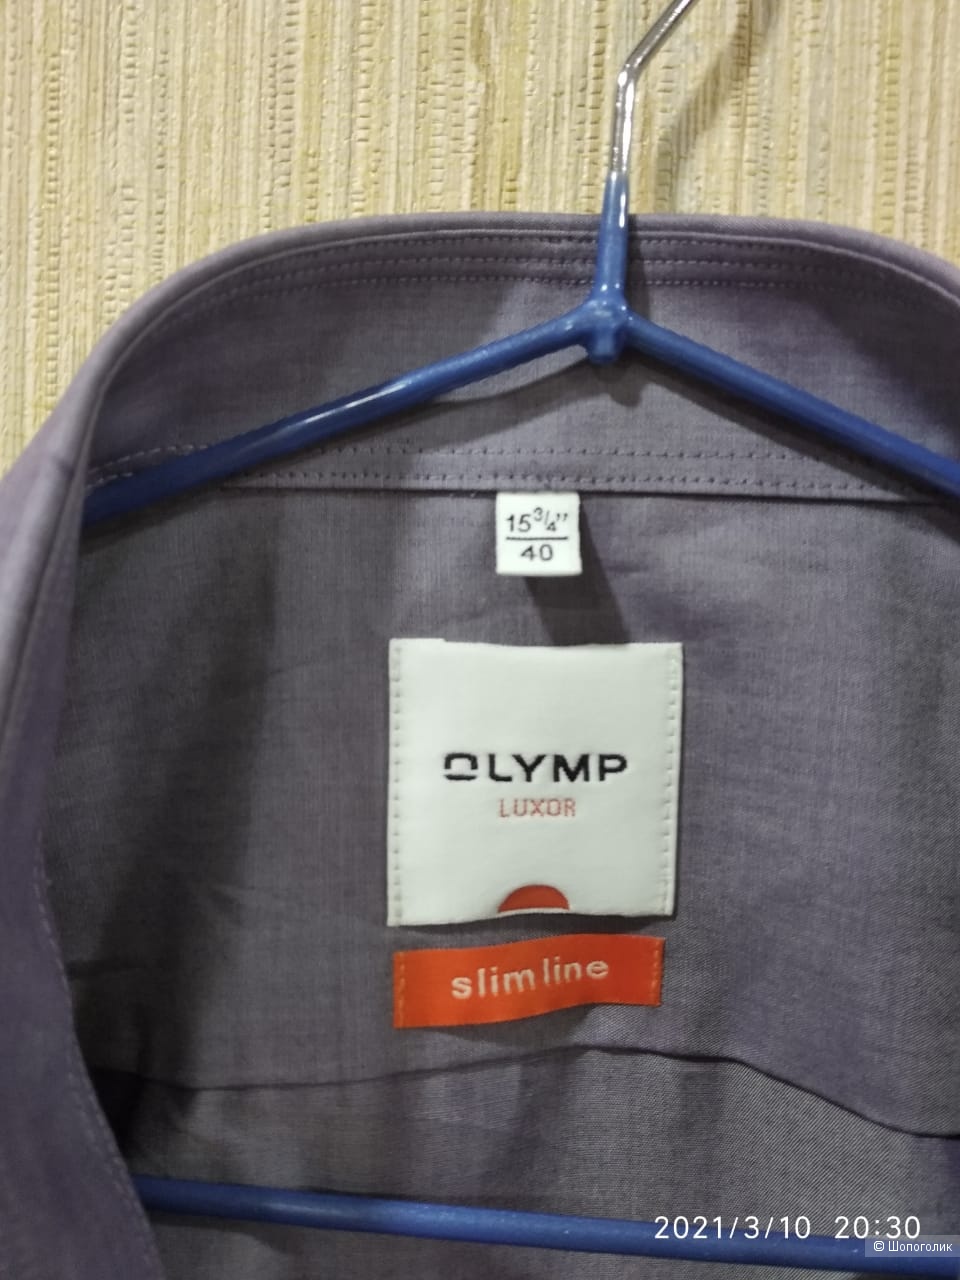 Рубашка Olymp, размер 40 (15 3/4)